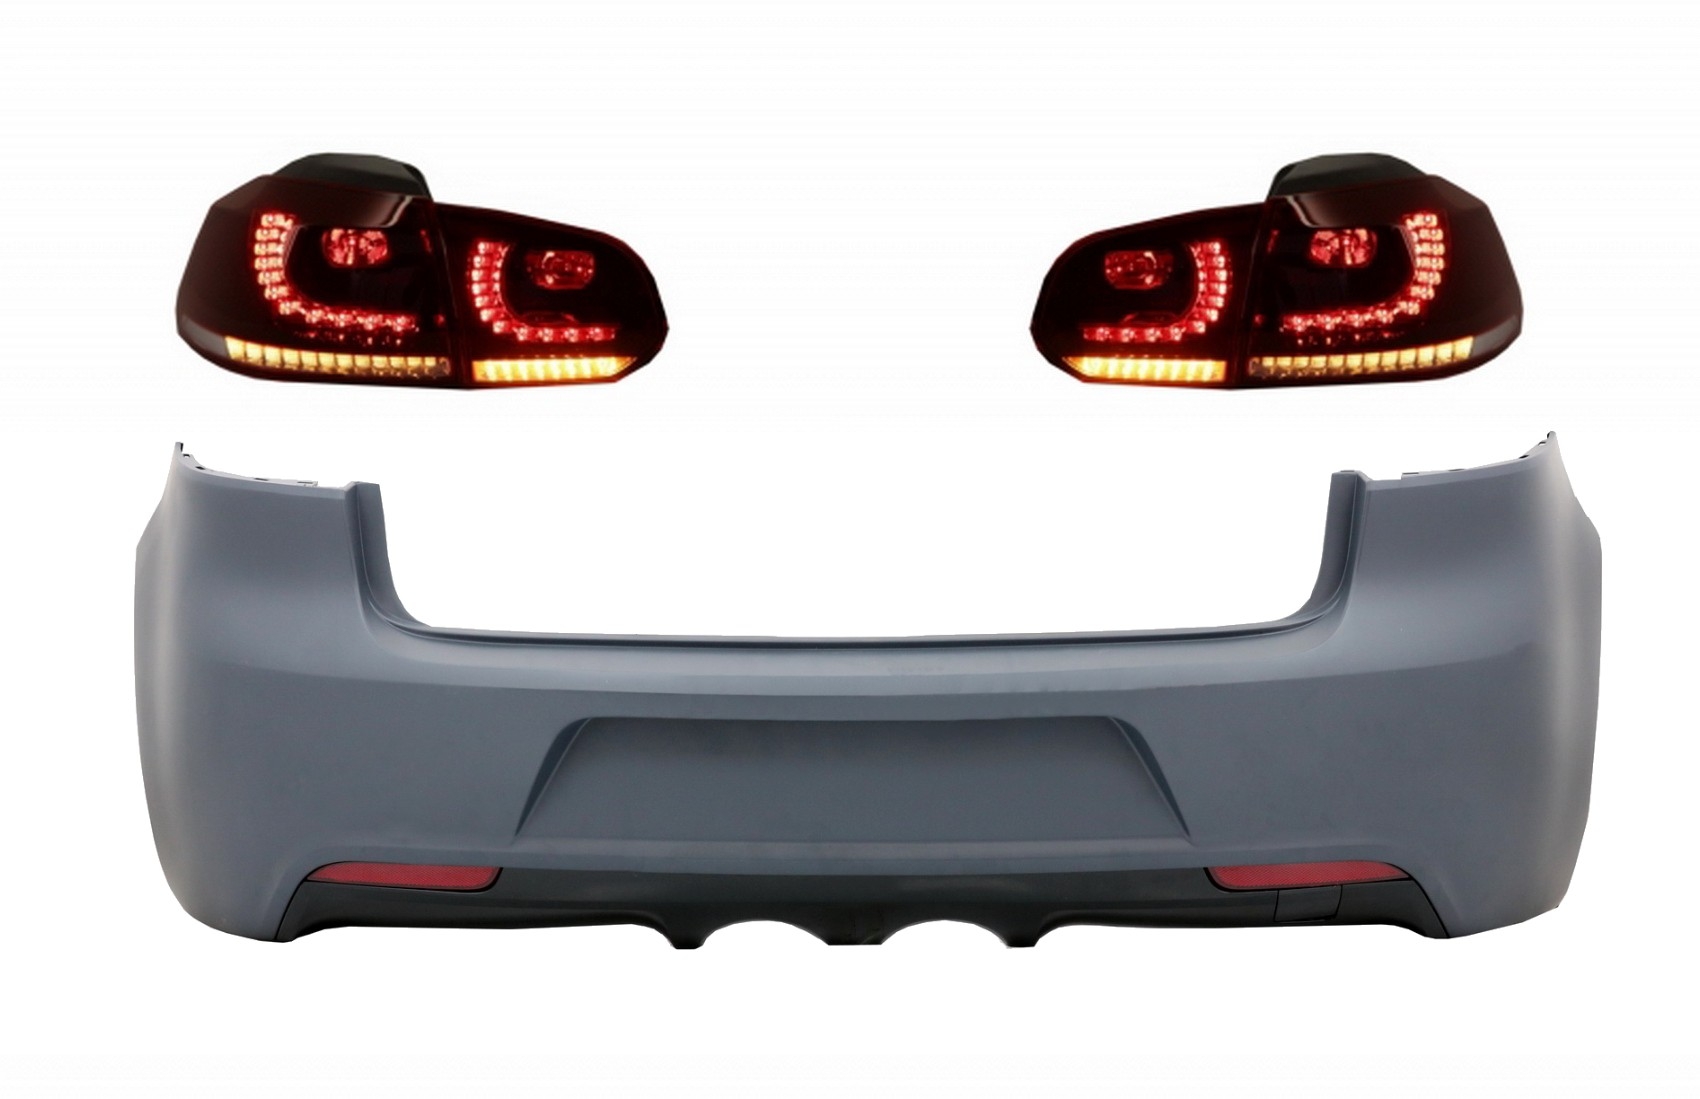 Hátsó lökhárító hátsó lámpákkal Full LED VW Golf VI (2008-2013) R20 Design dinamikus szekvenciális kanyarodólámpához (LHD és RHD)